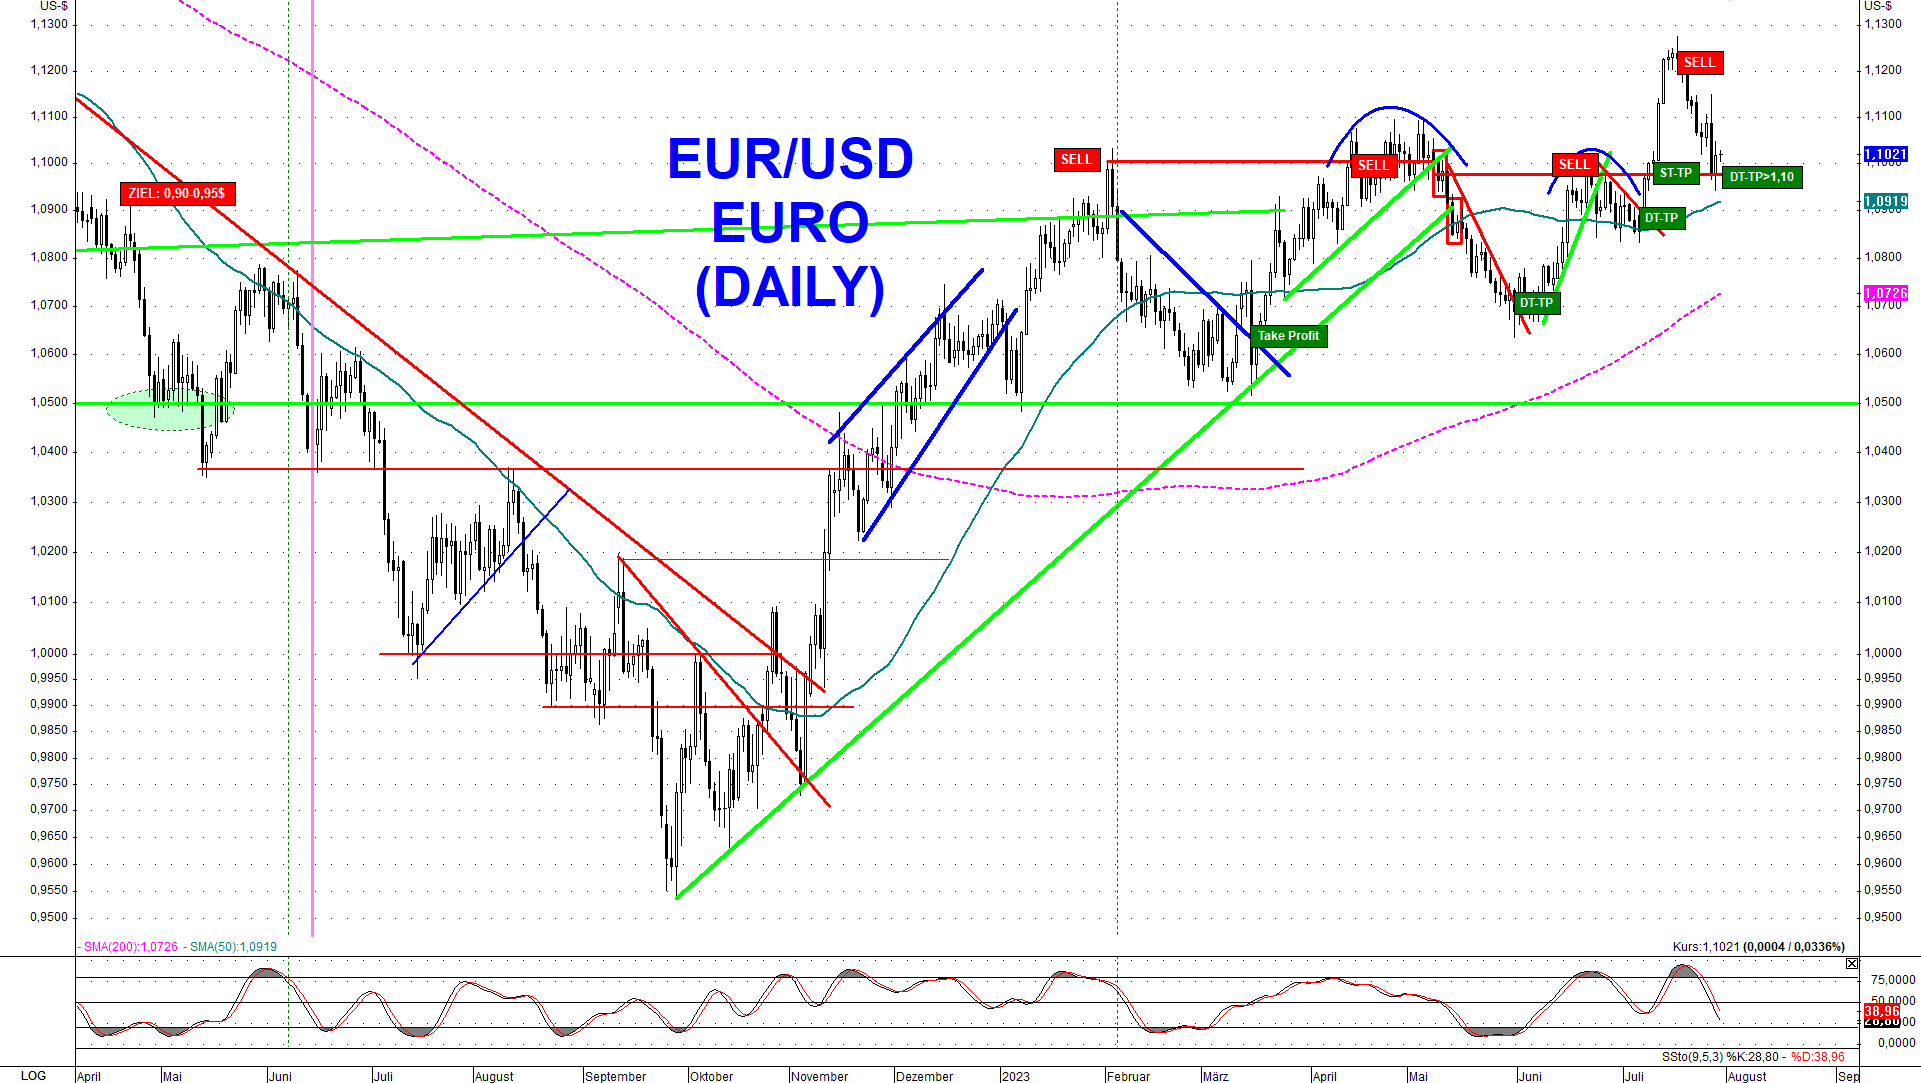 Euro fiel zurück